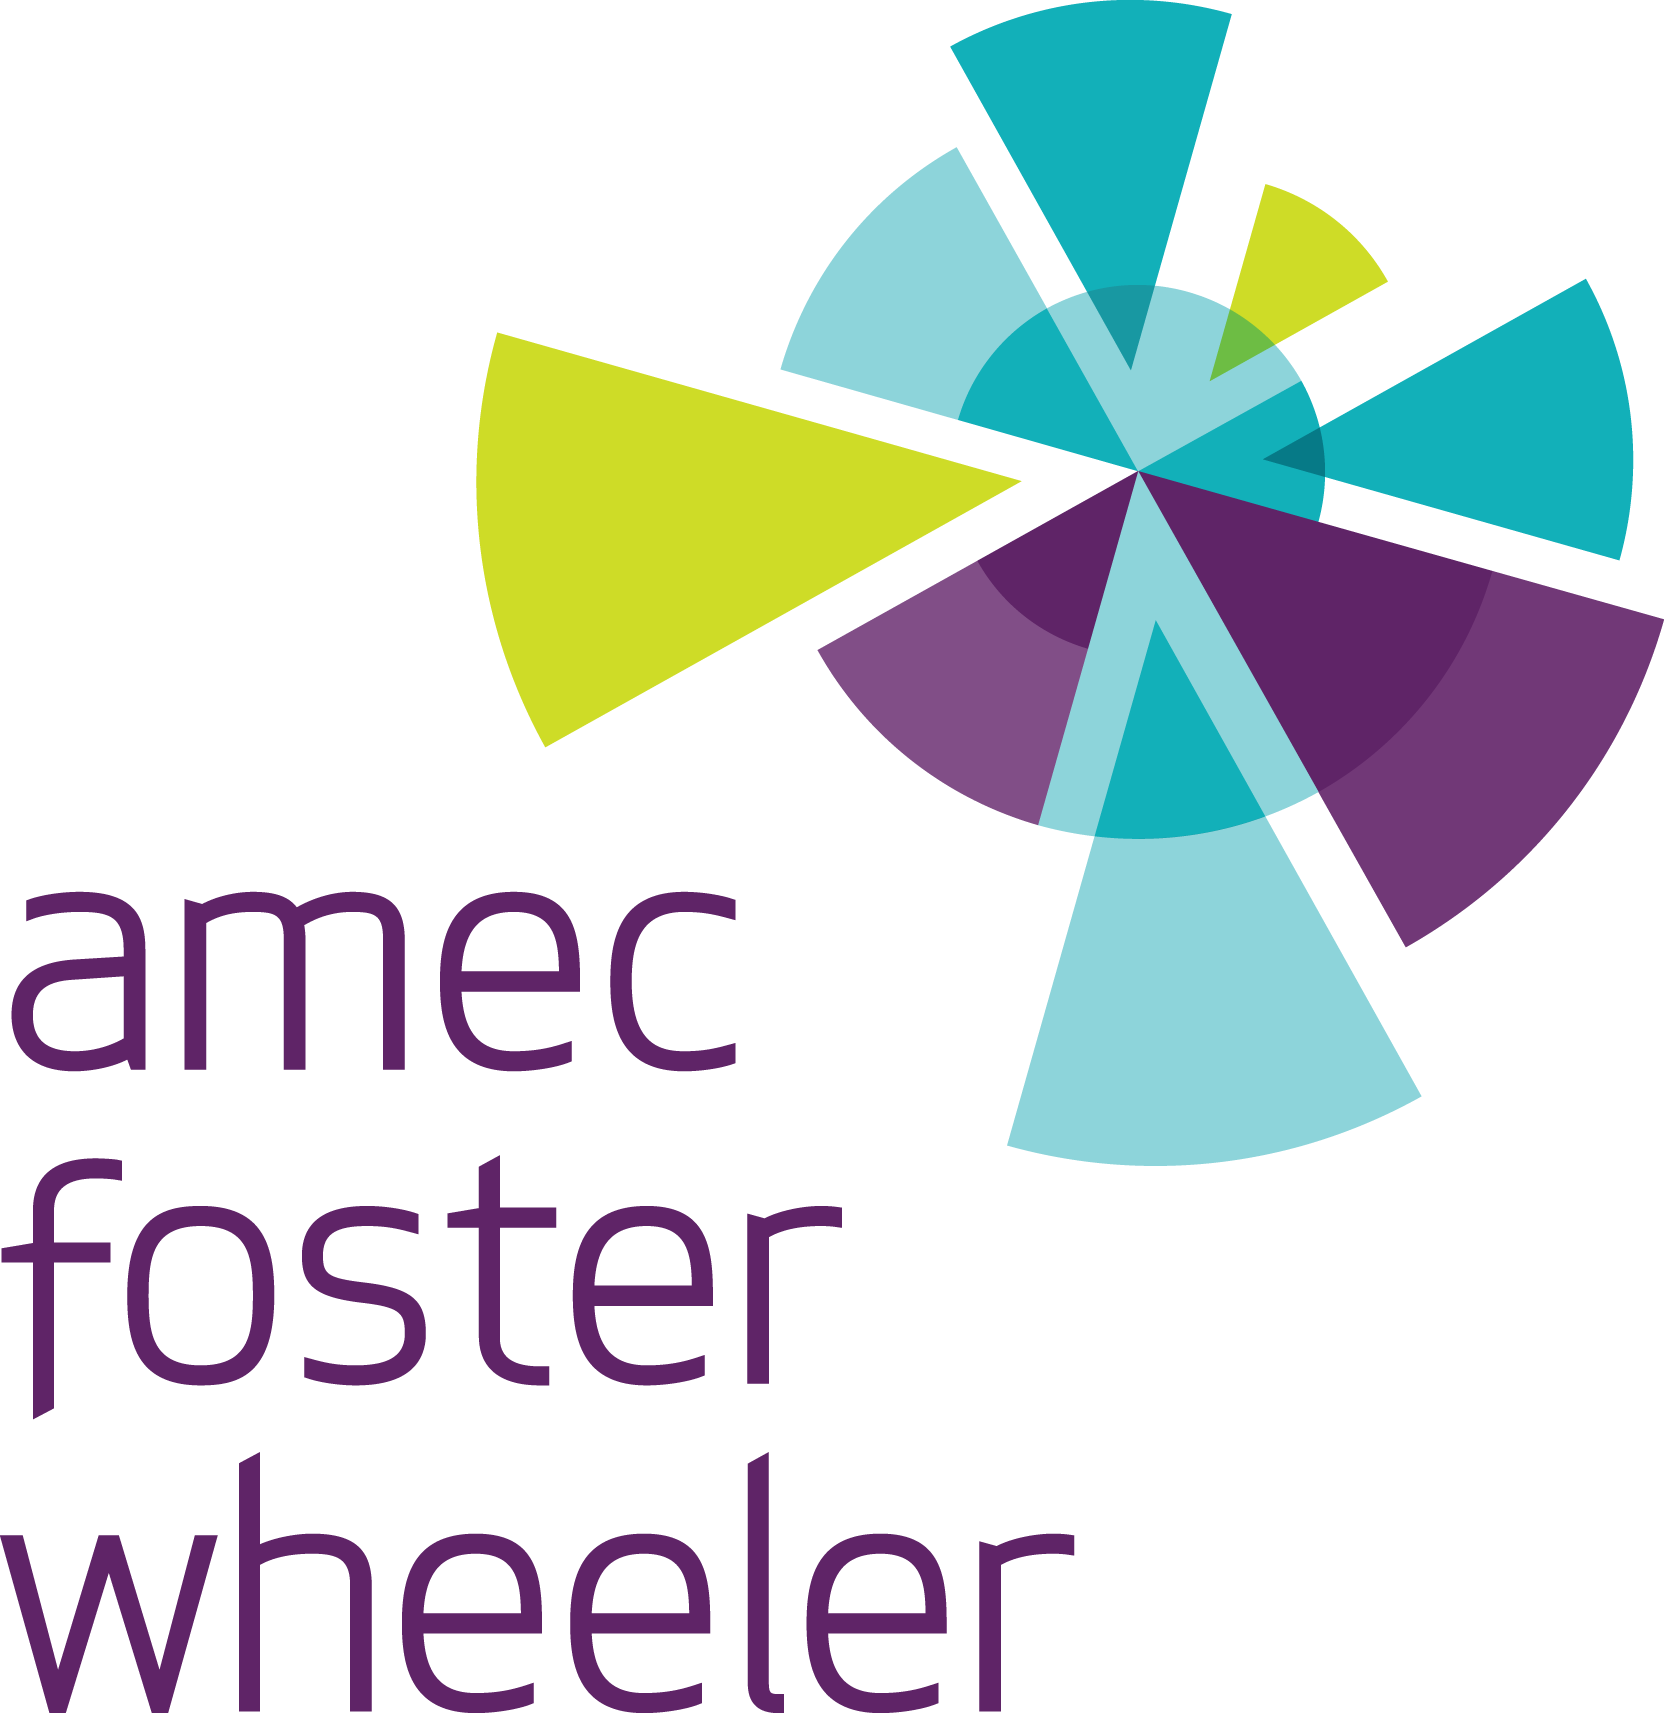 Amec Foster Wheeler logo